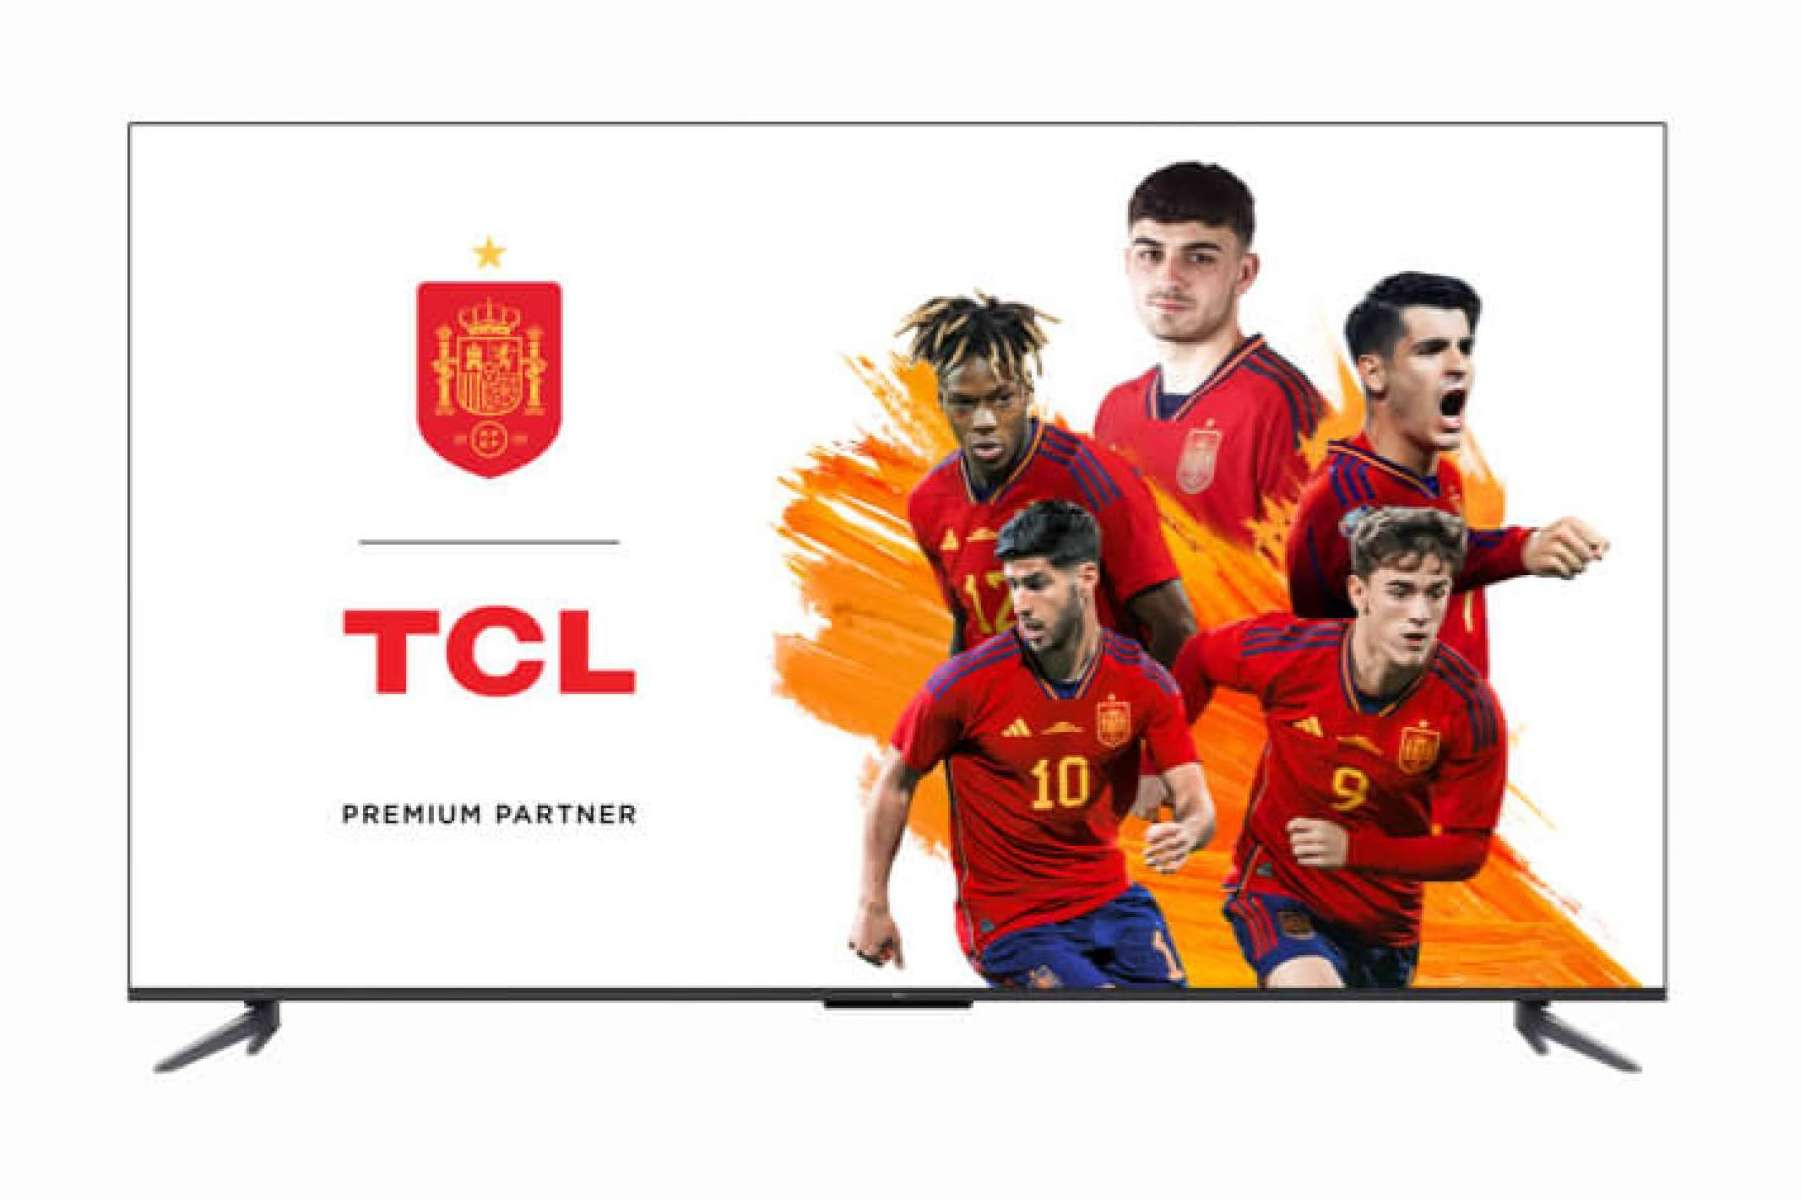  TCL celebra su asociación con el fútbol europeo antes del torneo de verano. 